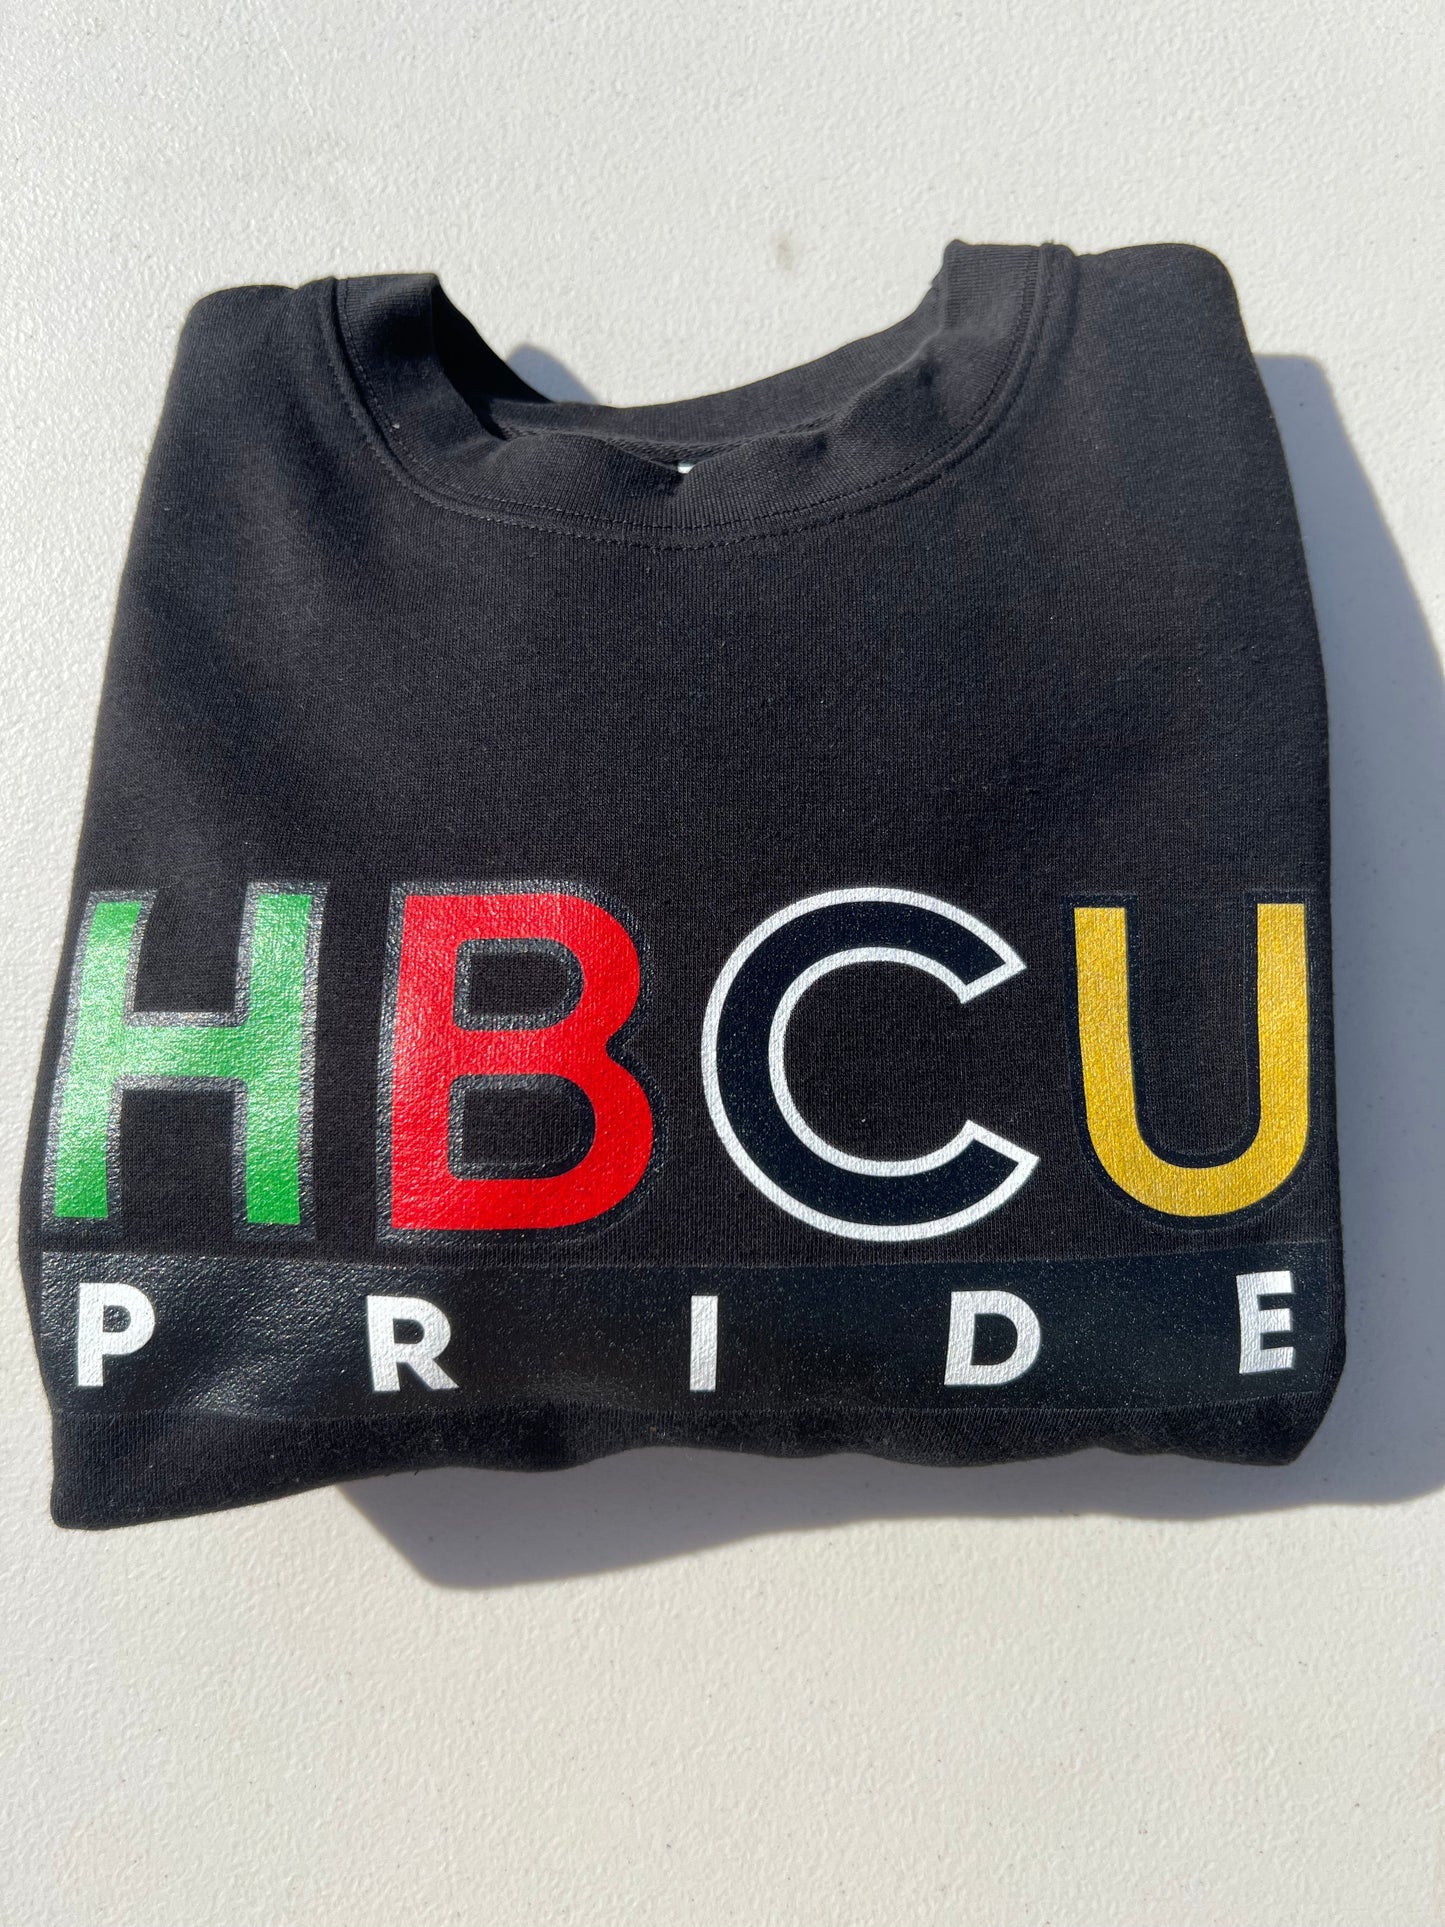 HBCU Pride Hoodie in Salmon